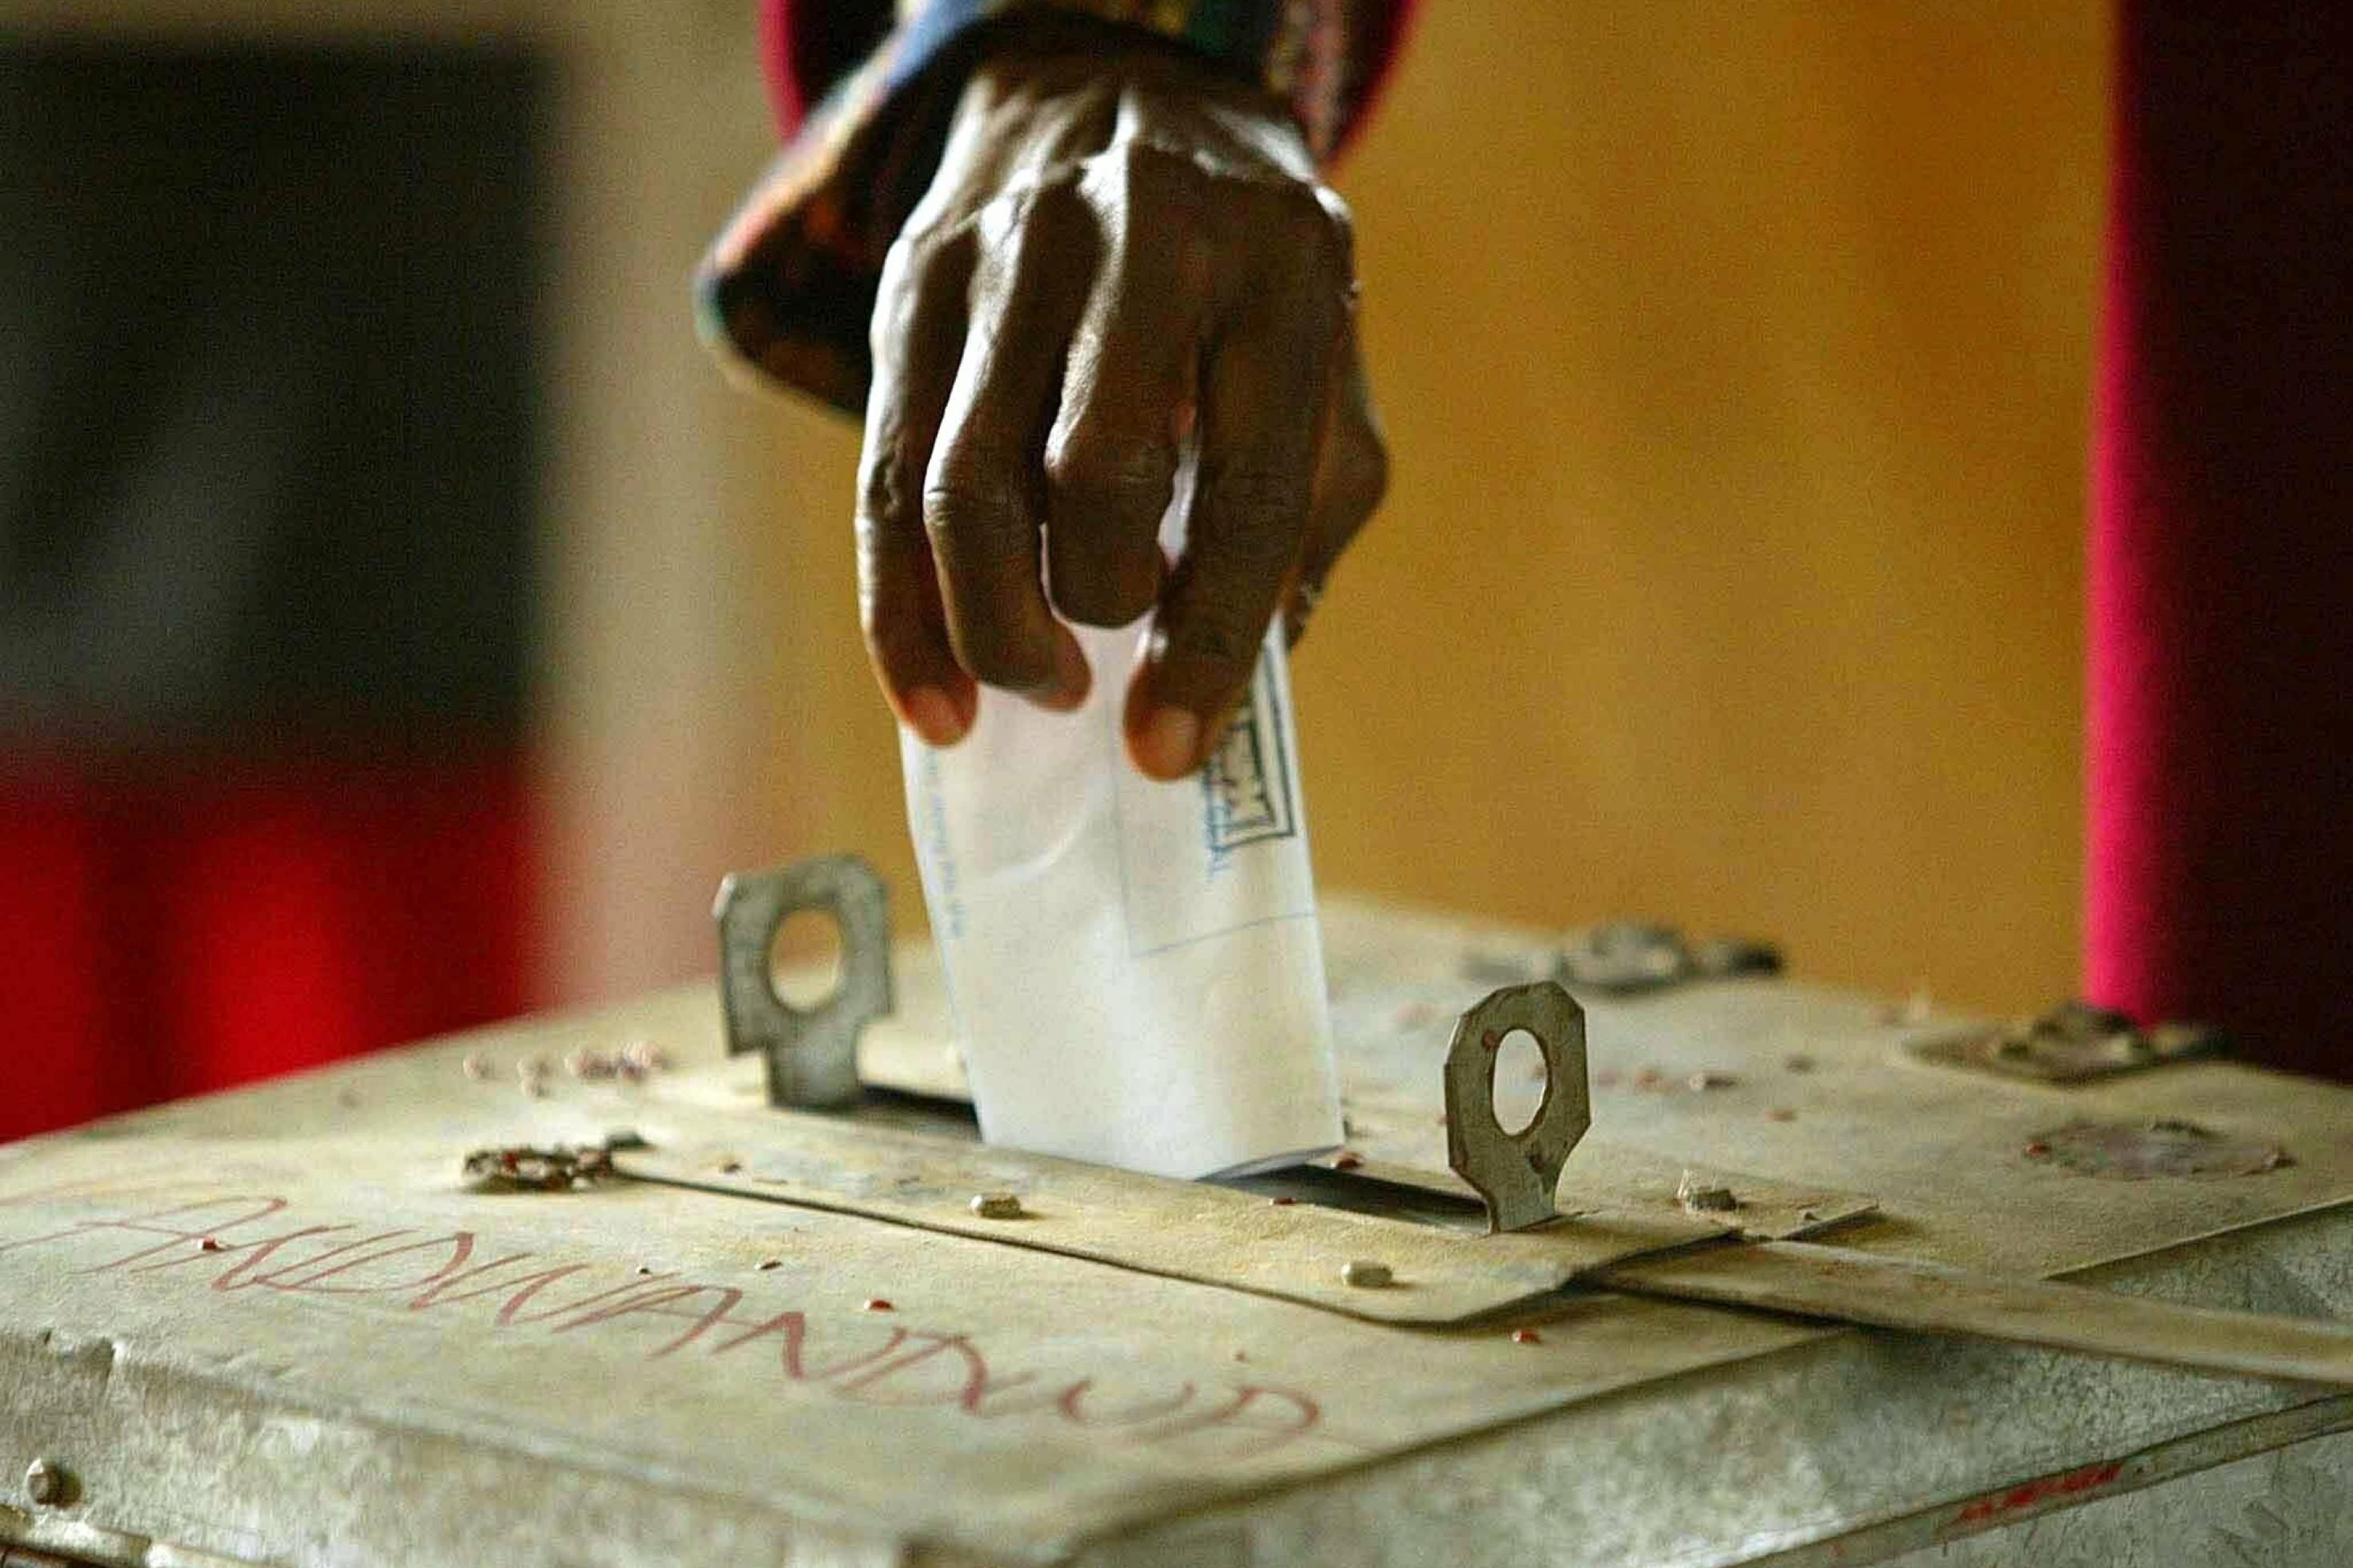 Ein Wähler wirft seinen Stimmzettel am 18.10.2003 in einem Wahllokal im Ntfonjeni-Gebiet im Nordosten von Swasiland in eine Wahlurne.